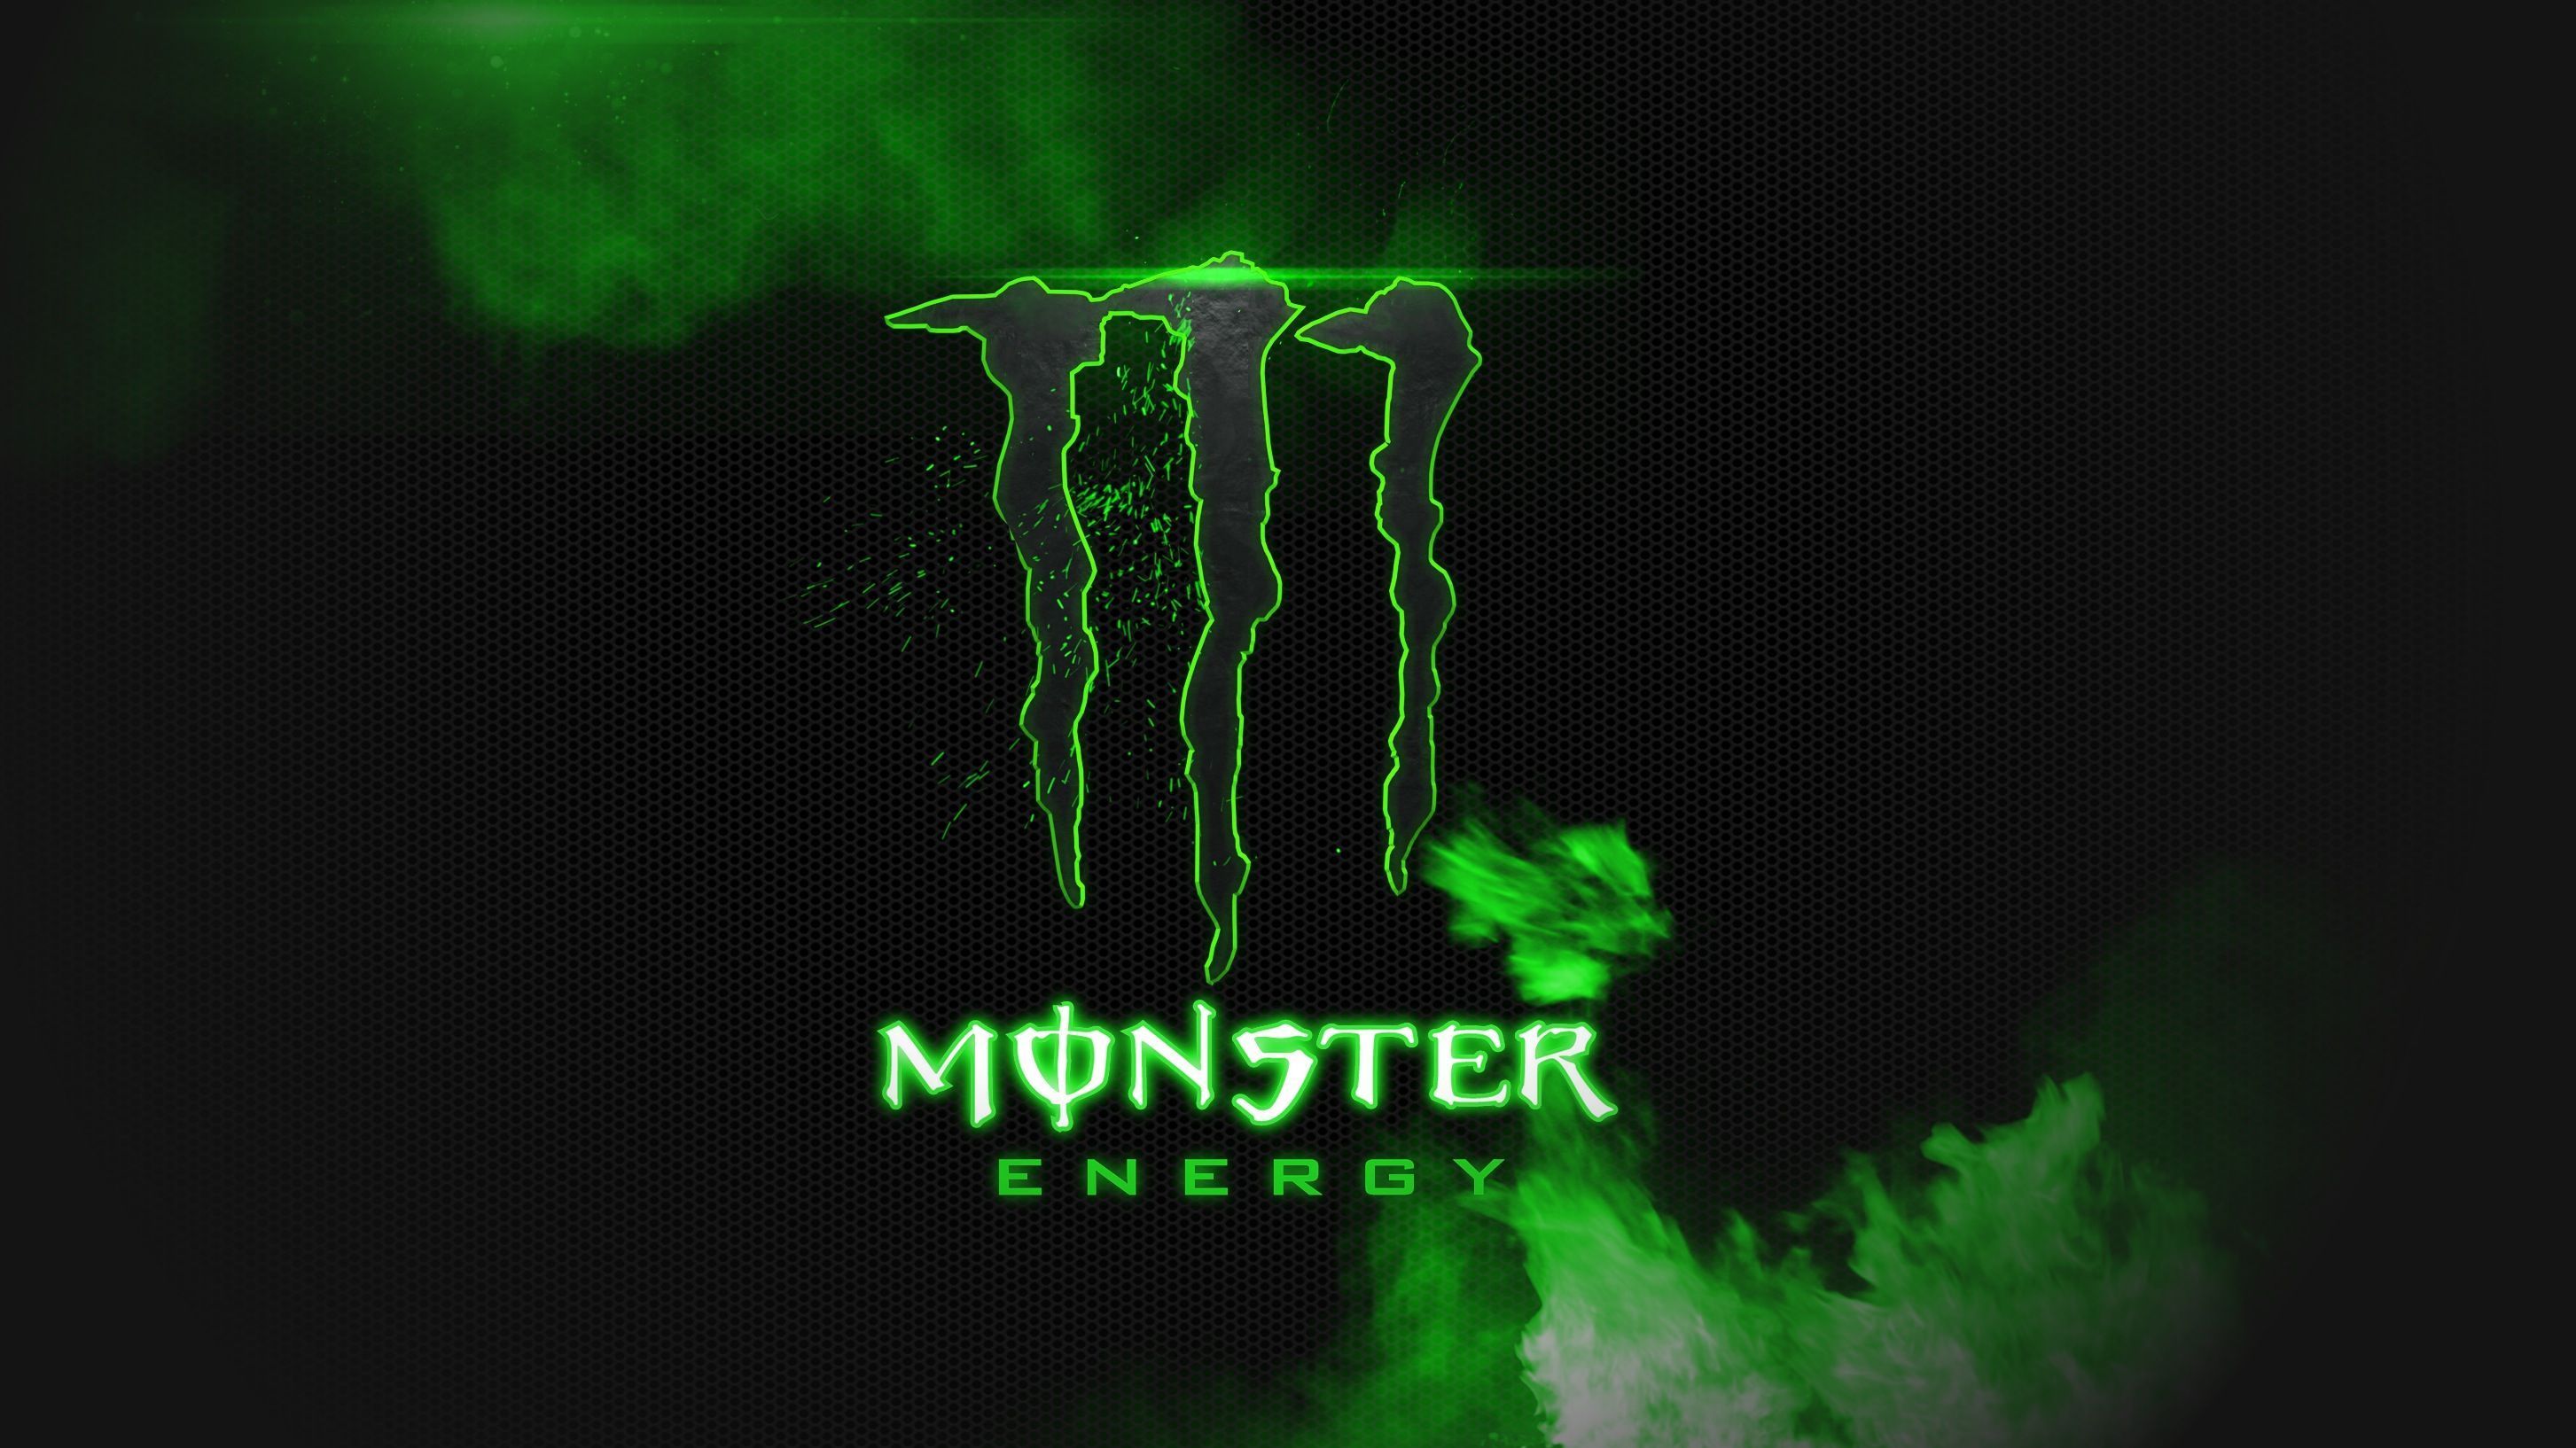 Monster Energy Desktop Wallpaper, Monster Energy Backgrounds, New